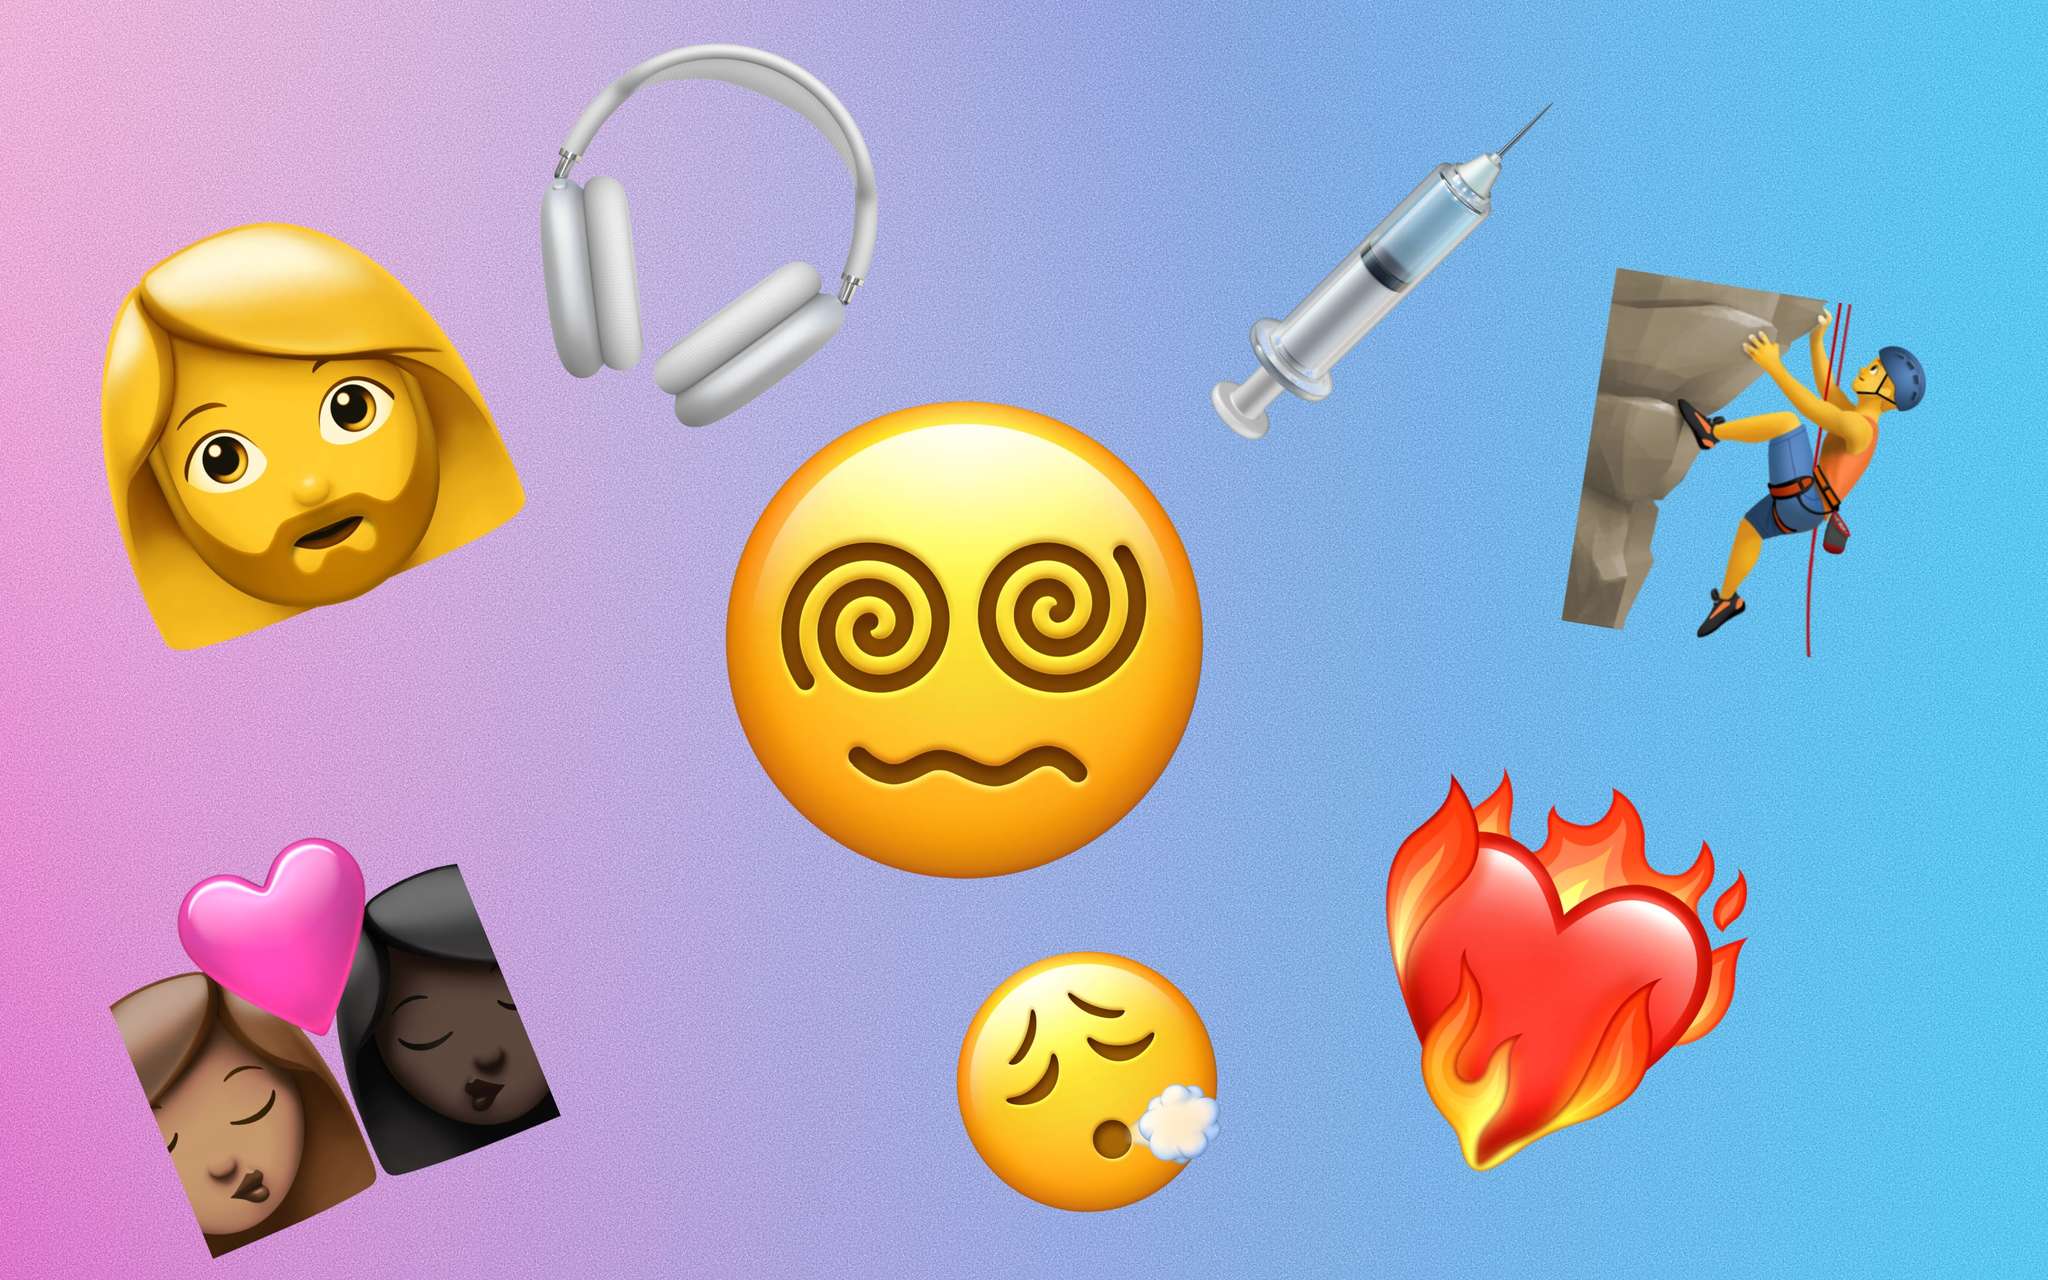 Parejas interraciales, jeringuillas sin sangre y Airpods?: as son los nuevos emojis que llegan al iPhone